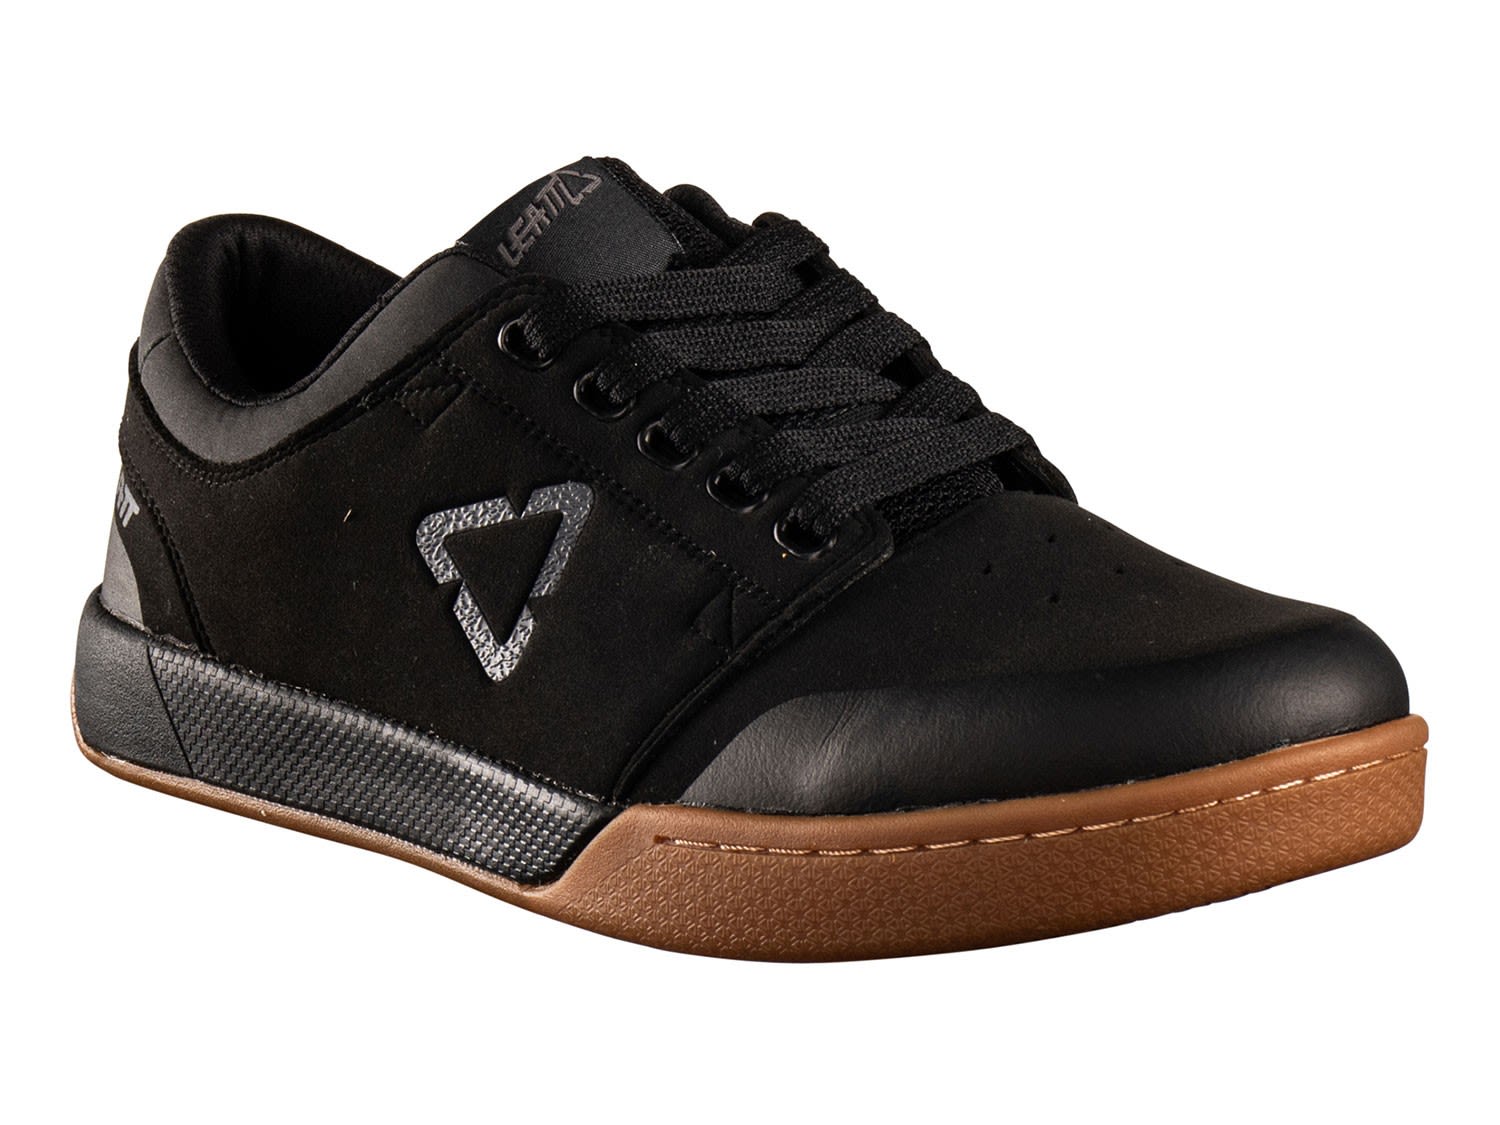 Leatt 2-0 Flatpedal Shoe Schwarz- Freeride- Grsse EU 38-5 - Farbe Black unter Leatt